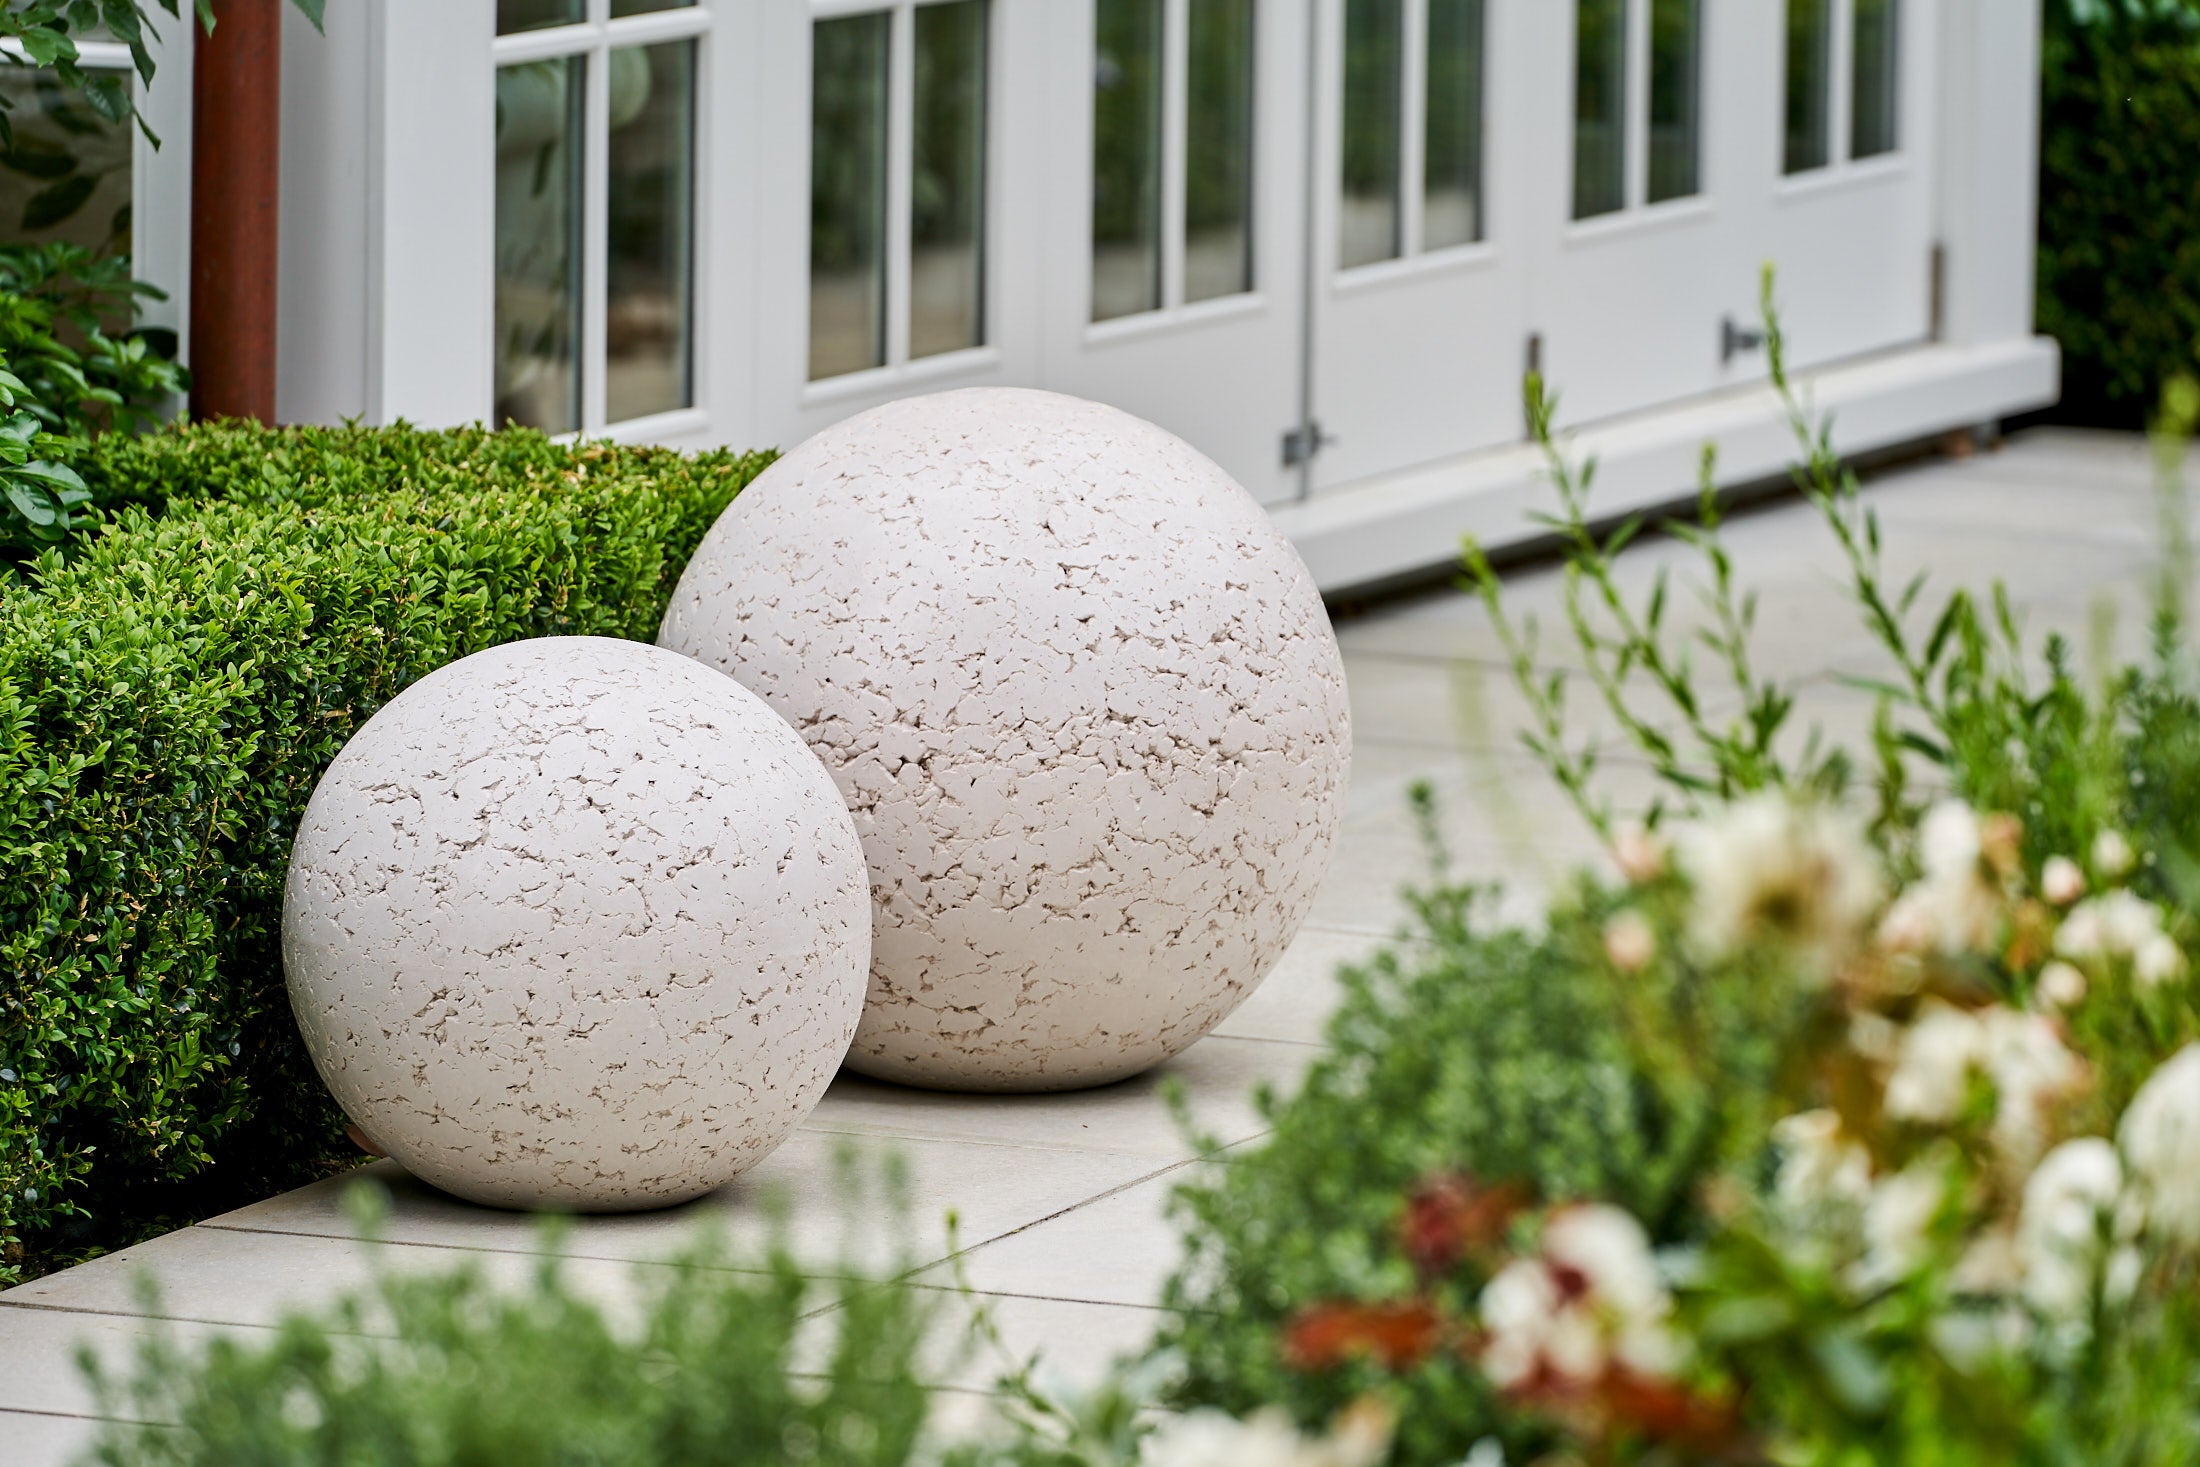 Spheres (Concrete Garden Balls) - Solid Art